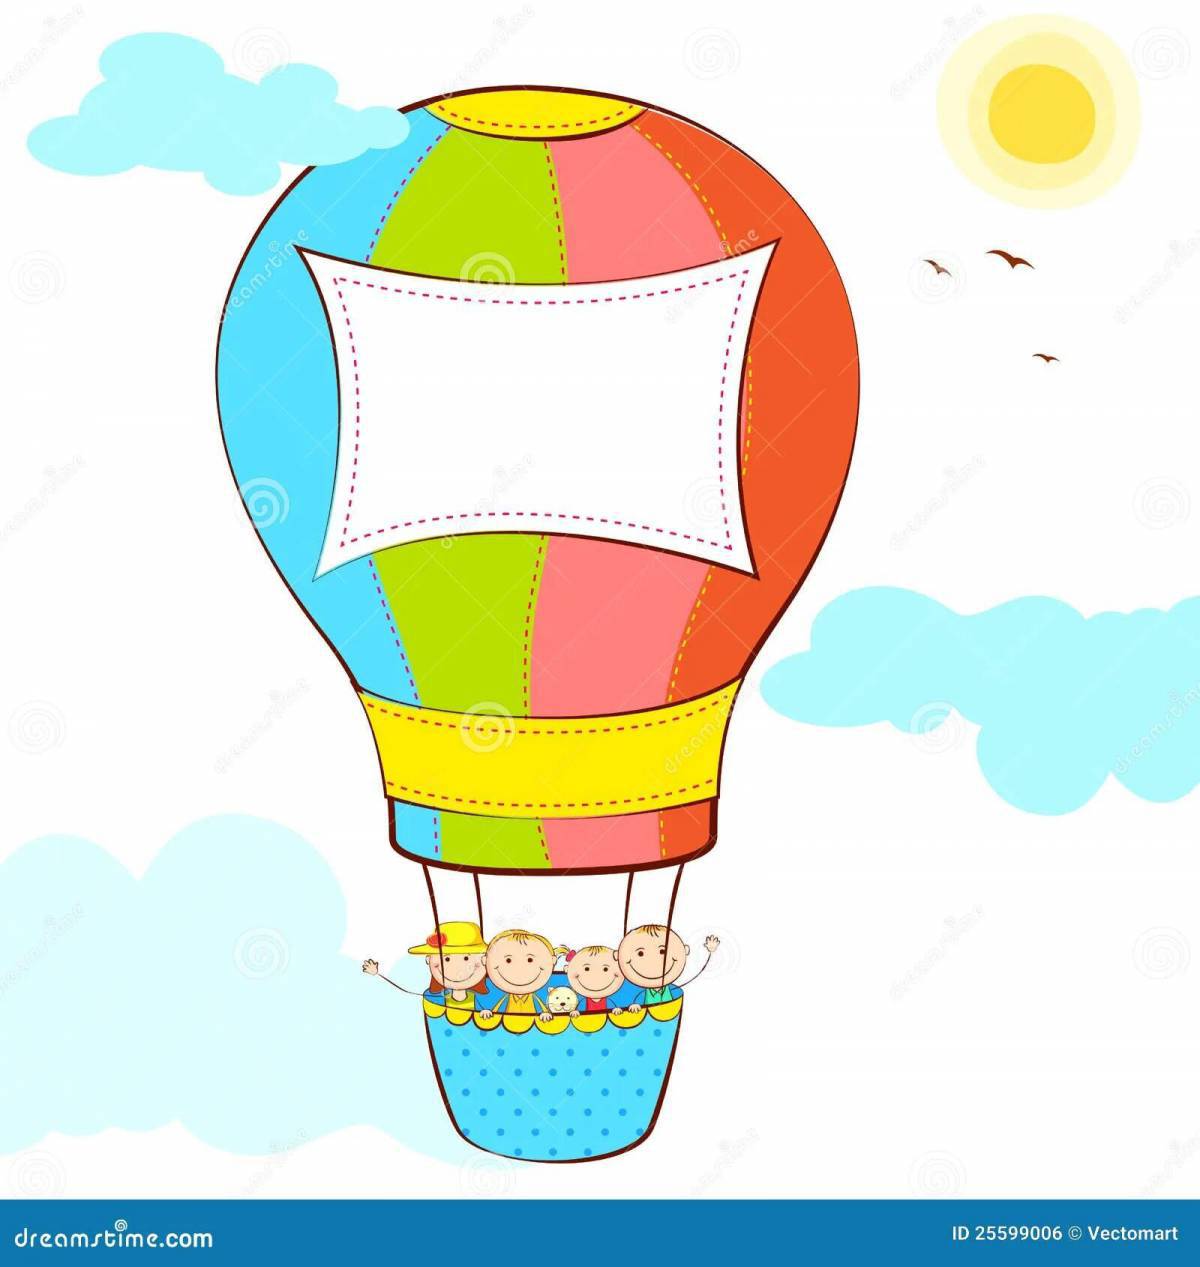 Стоковые векторные изображения по запросу Раскраски воздушный шар